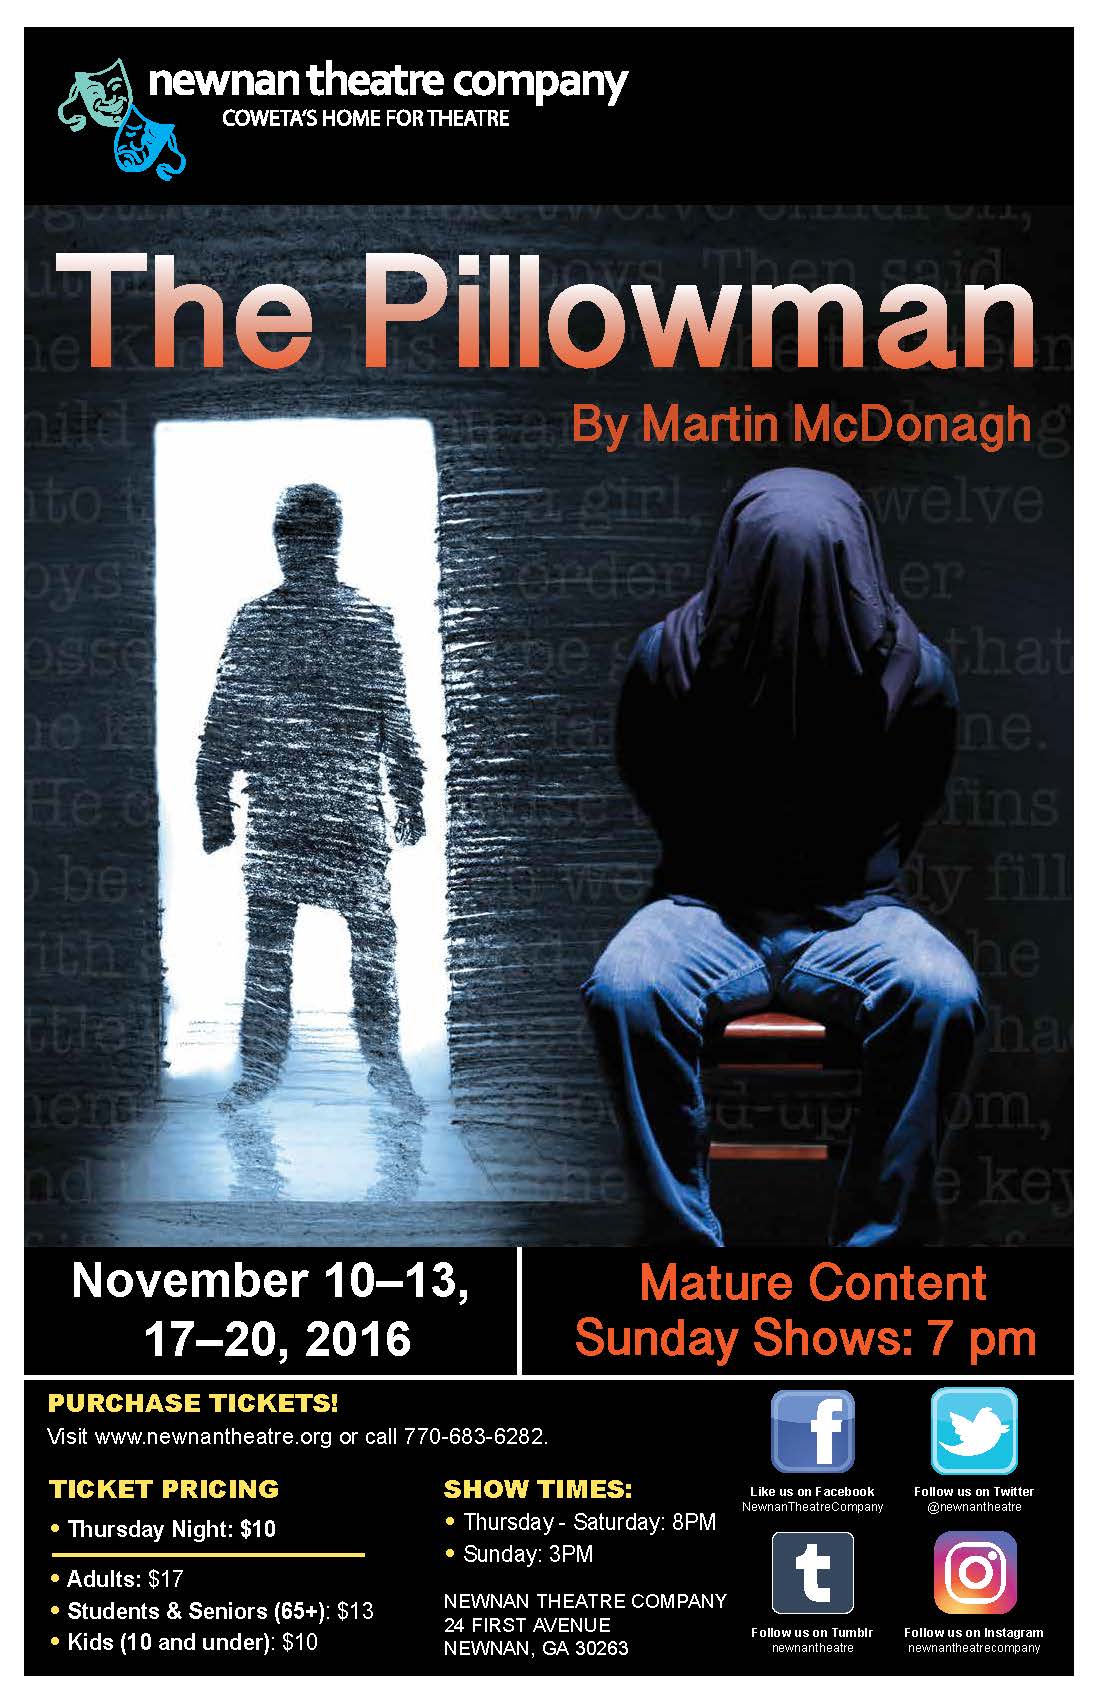 Pillowman poster 11x17.jpg